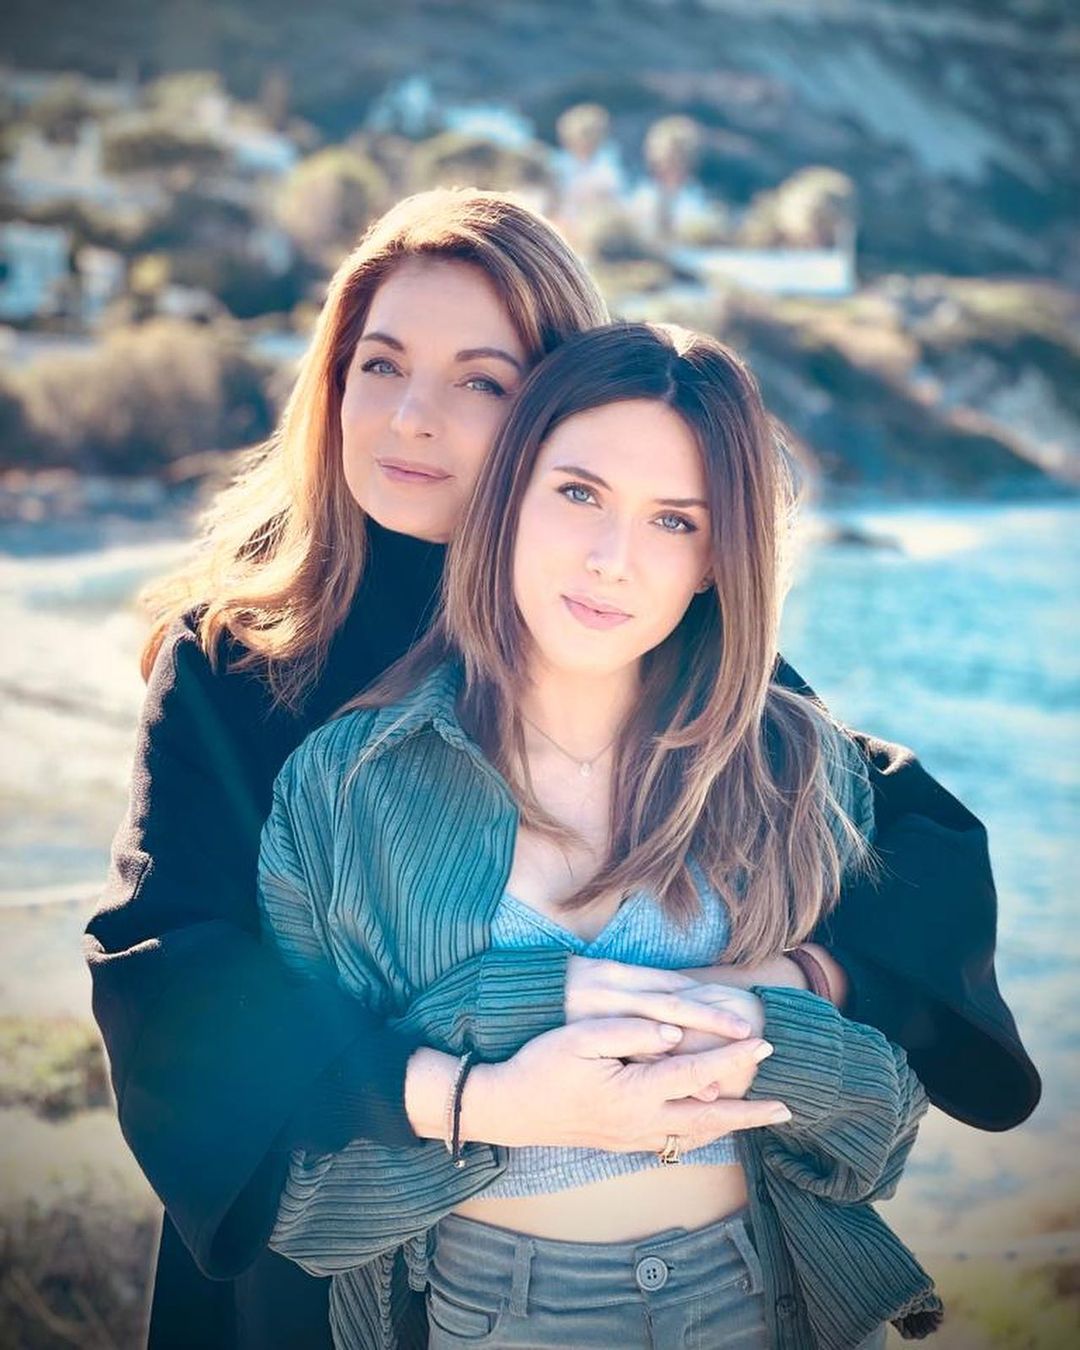 Άντζελα Γκερέκου: Πόζαρε αγκαλιά με τη μητέρα της και "έριξε" το Instagram - Το τρυφερό ποστ!